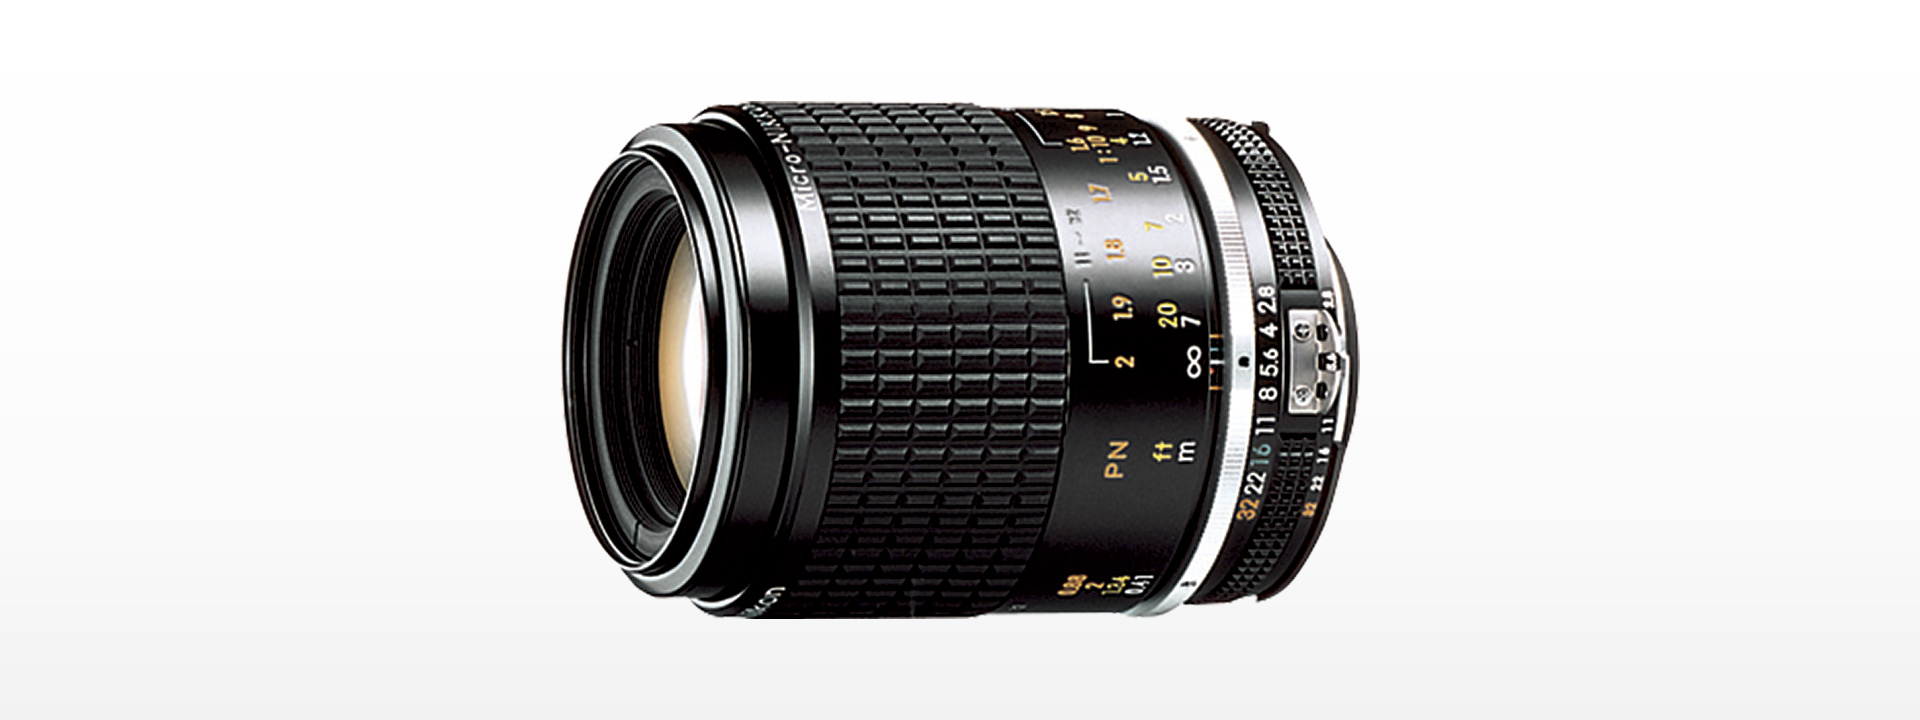 Nikon AF Micro Nikkor 105mm F2.8S